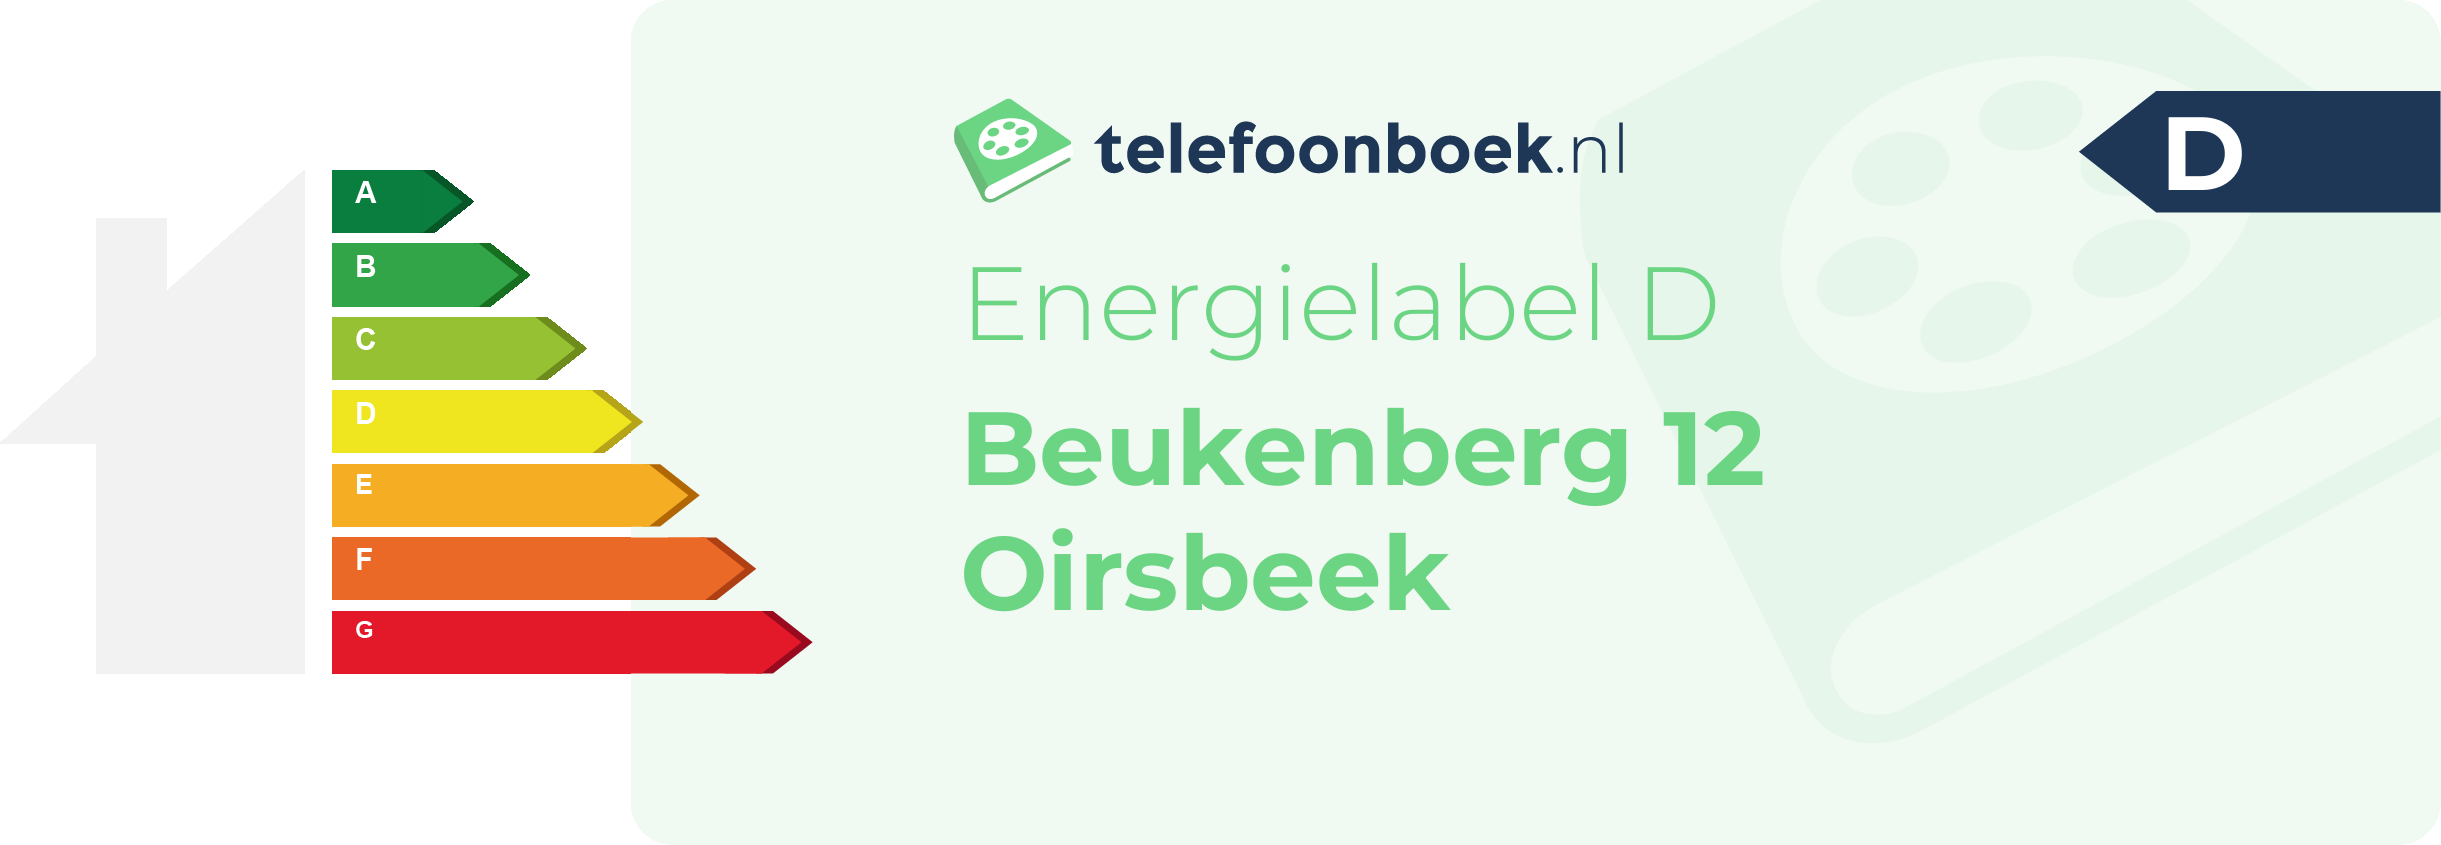 Energielabel Beukenberg 12 Oirsbeek